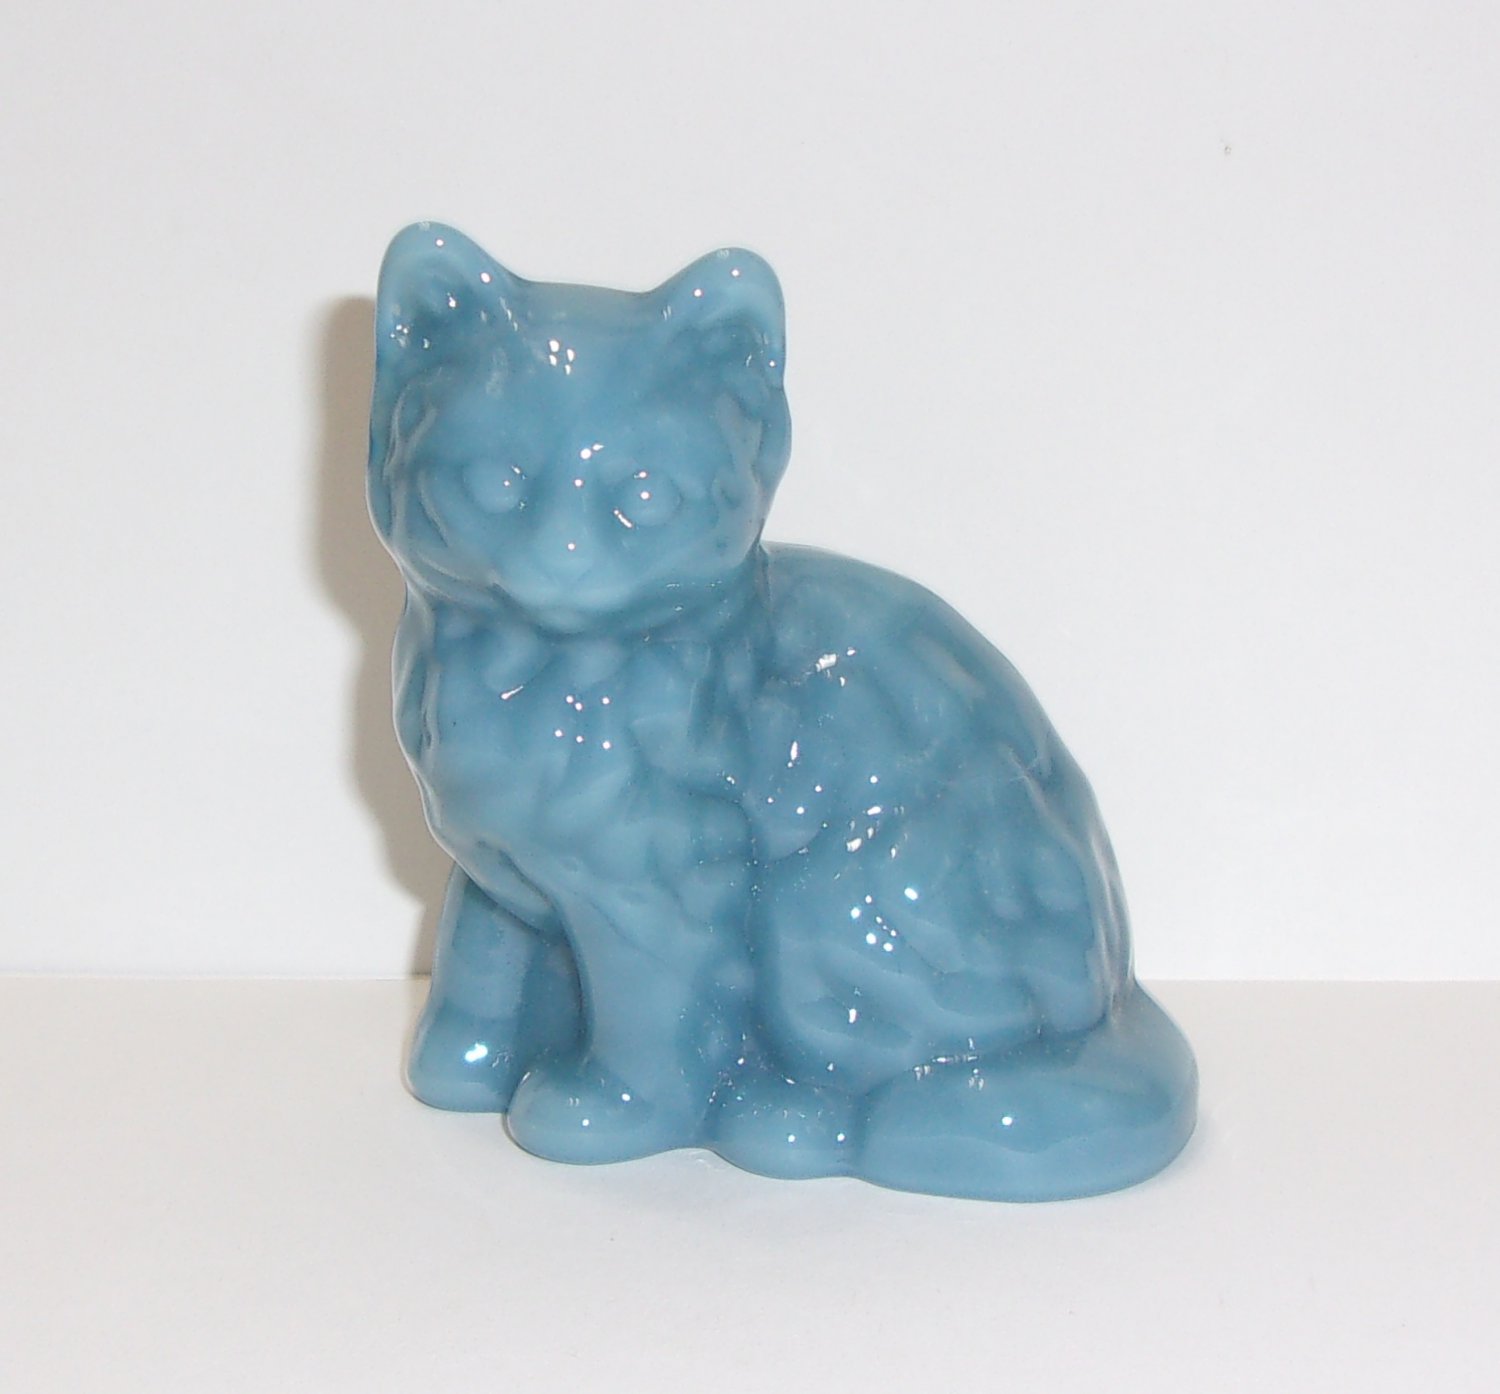 Mosser Glass Georgia Blue Persian Cat Kitten Figurine Made In USA!